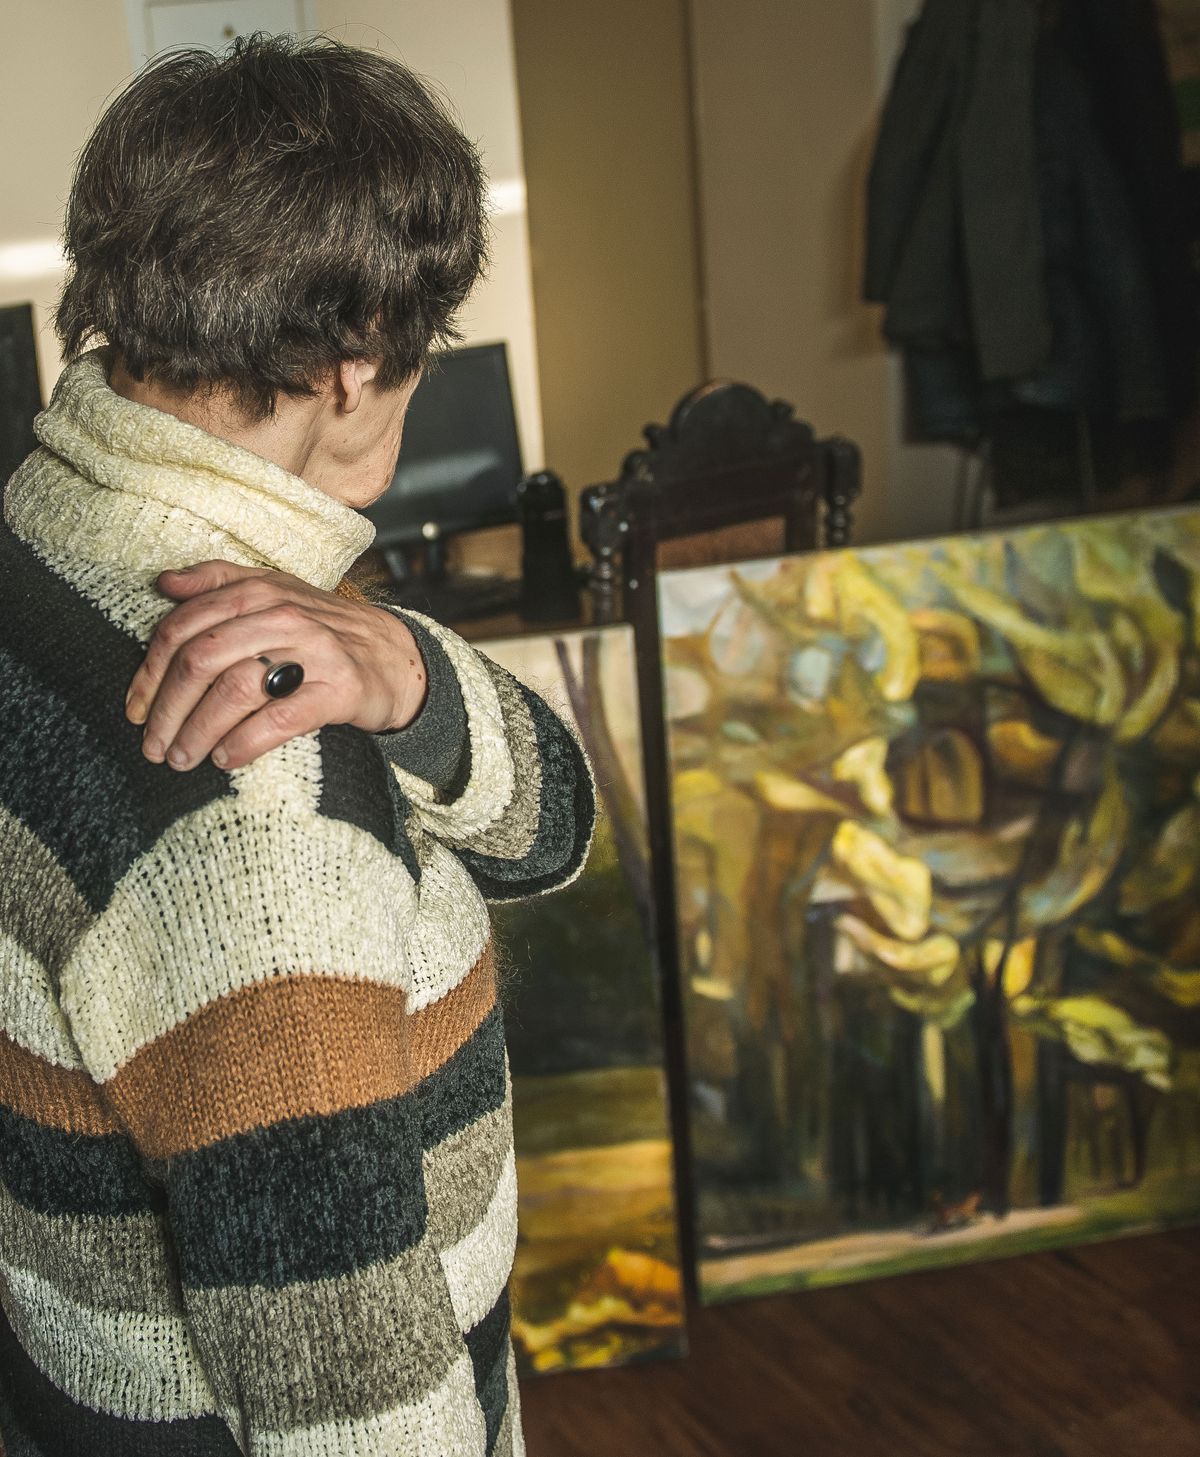 Biruta Delle pieskaras sāpošajam plecam - gleznotāja profesionālā trauma